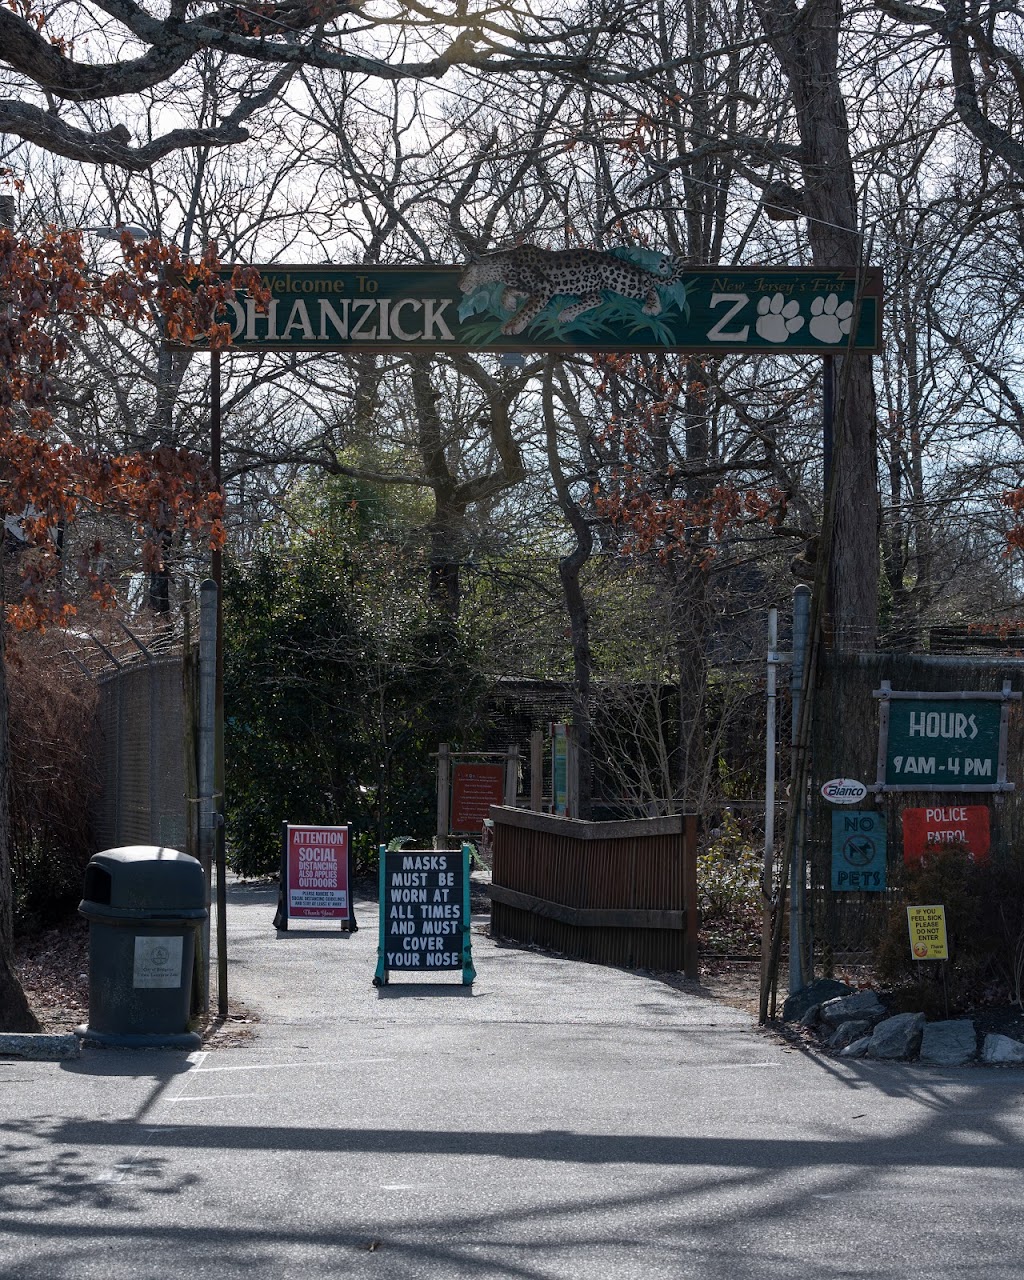 Cohanzick Zoo | 45 Mayor Aitken Dr, Bridgeton, NJ 08302 | Phone: (856) 453-1658